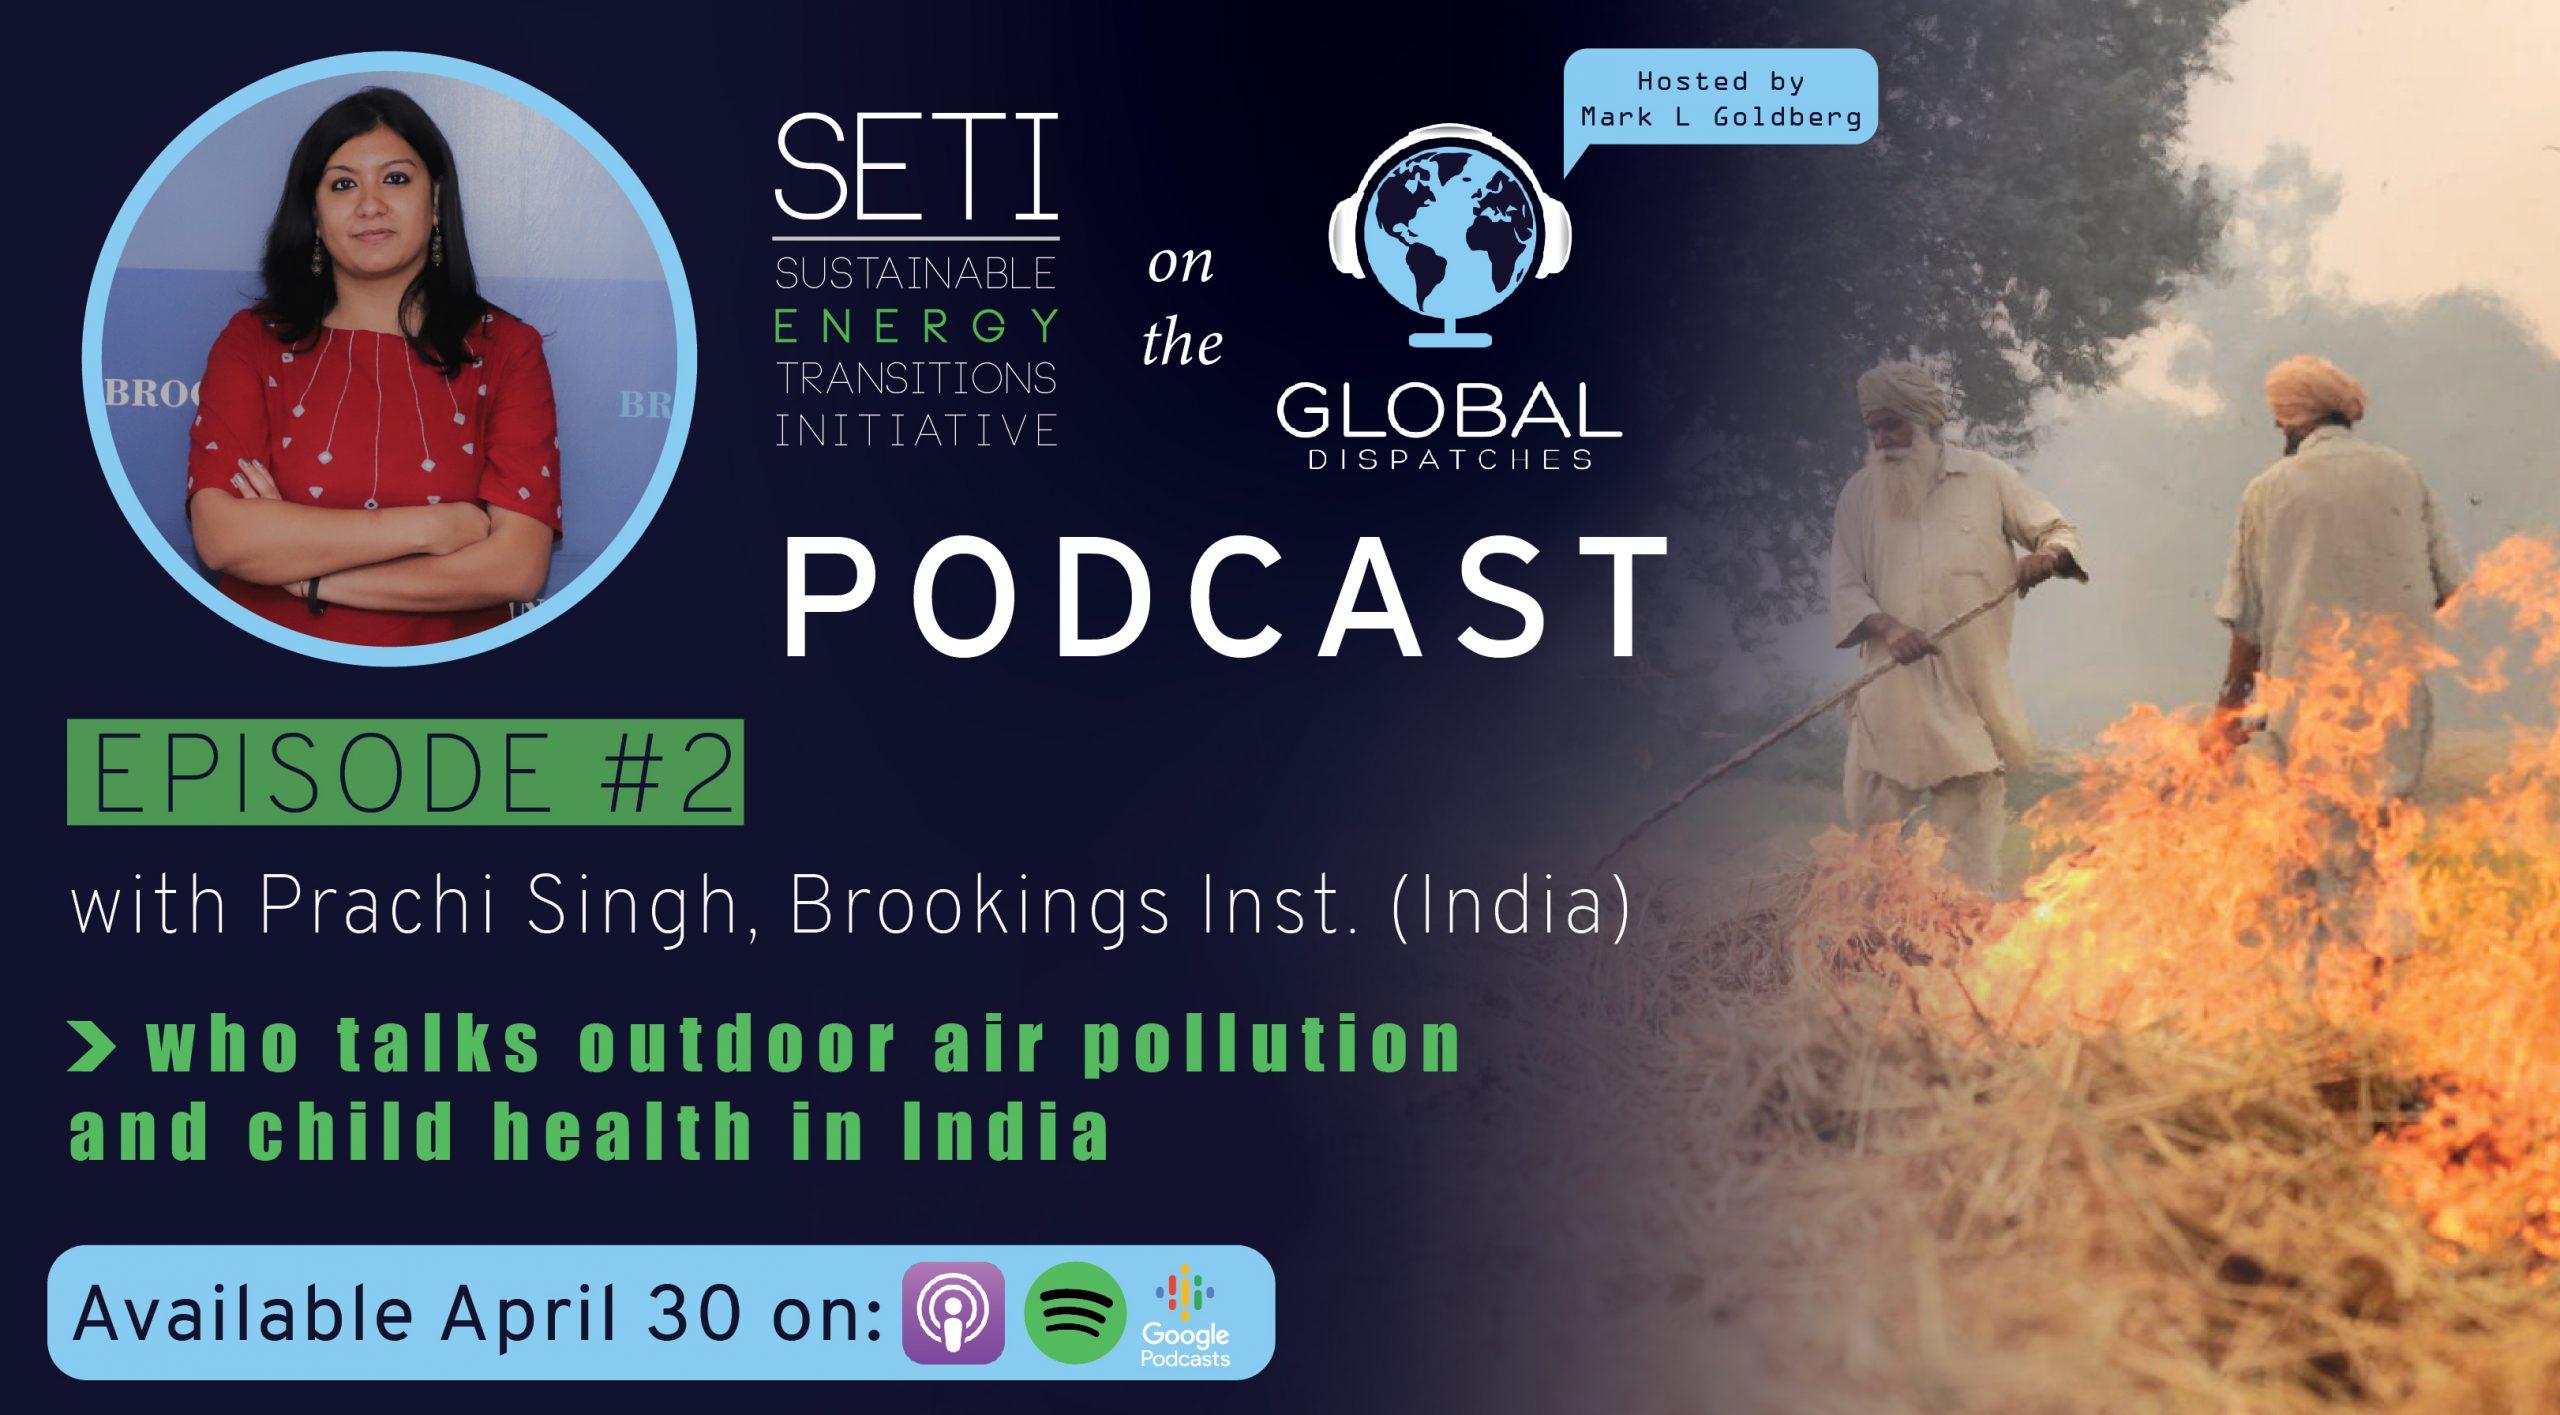 SETI podcast Prachi Singh